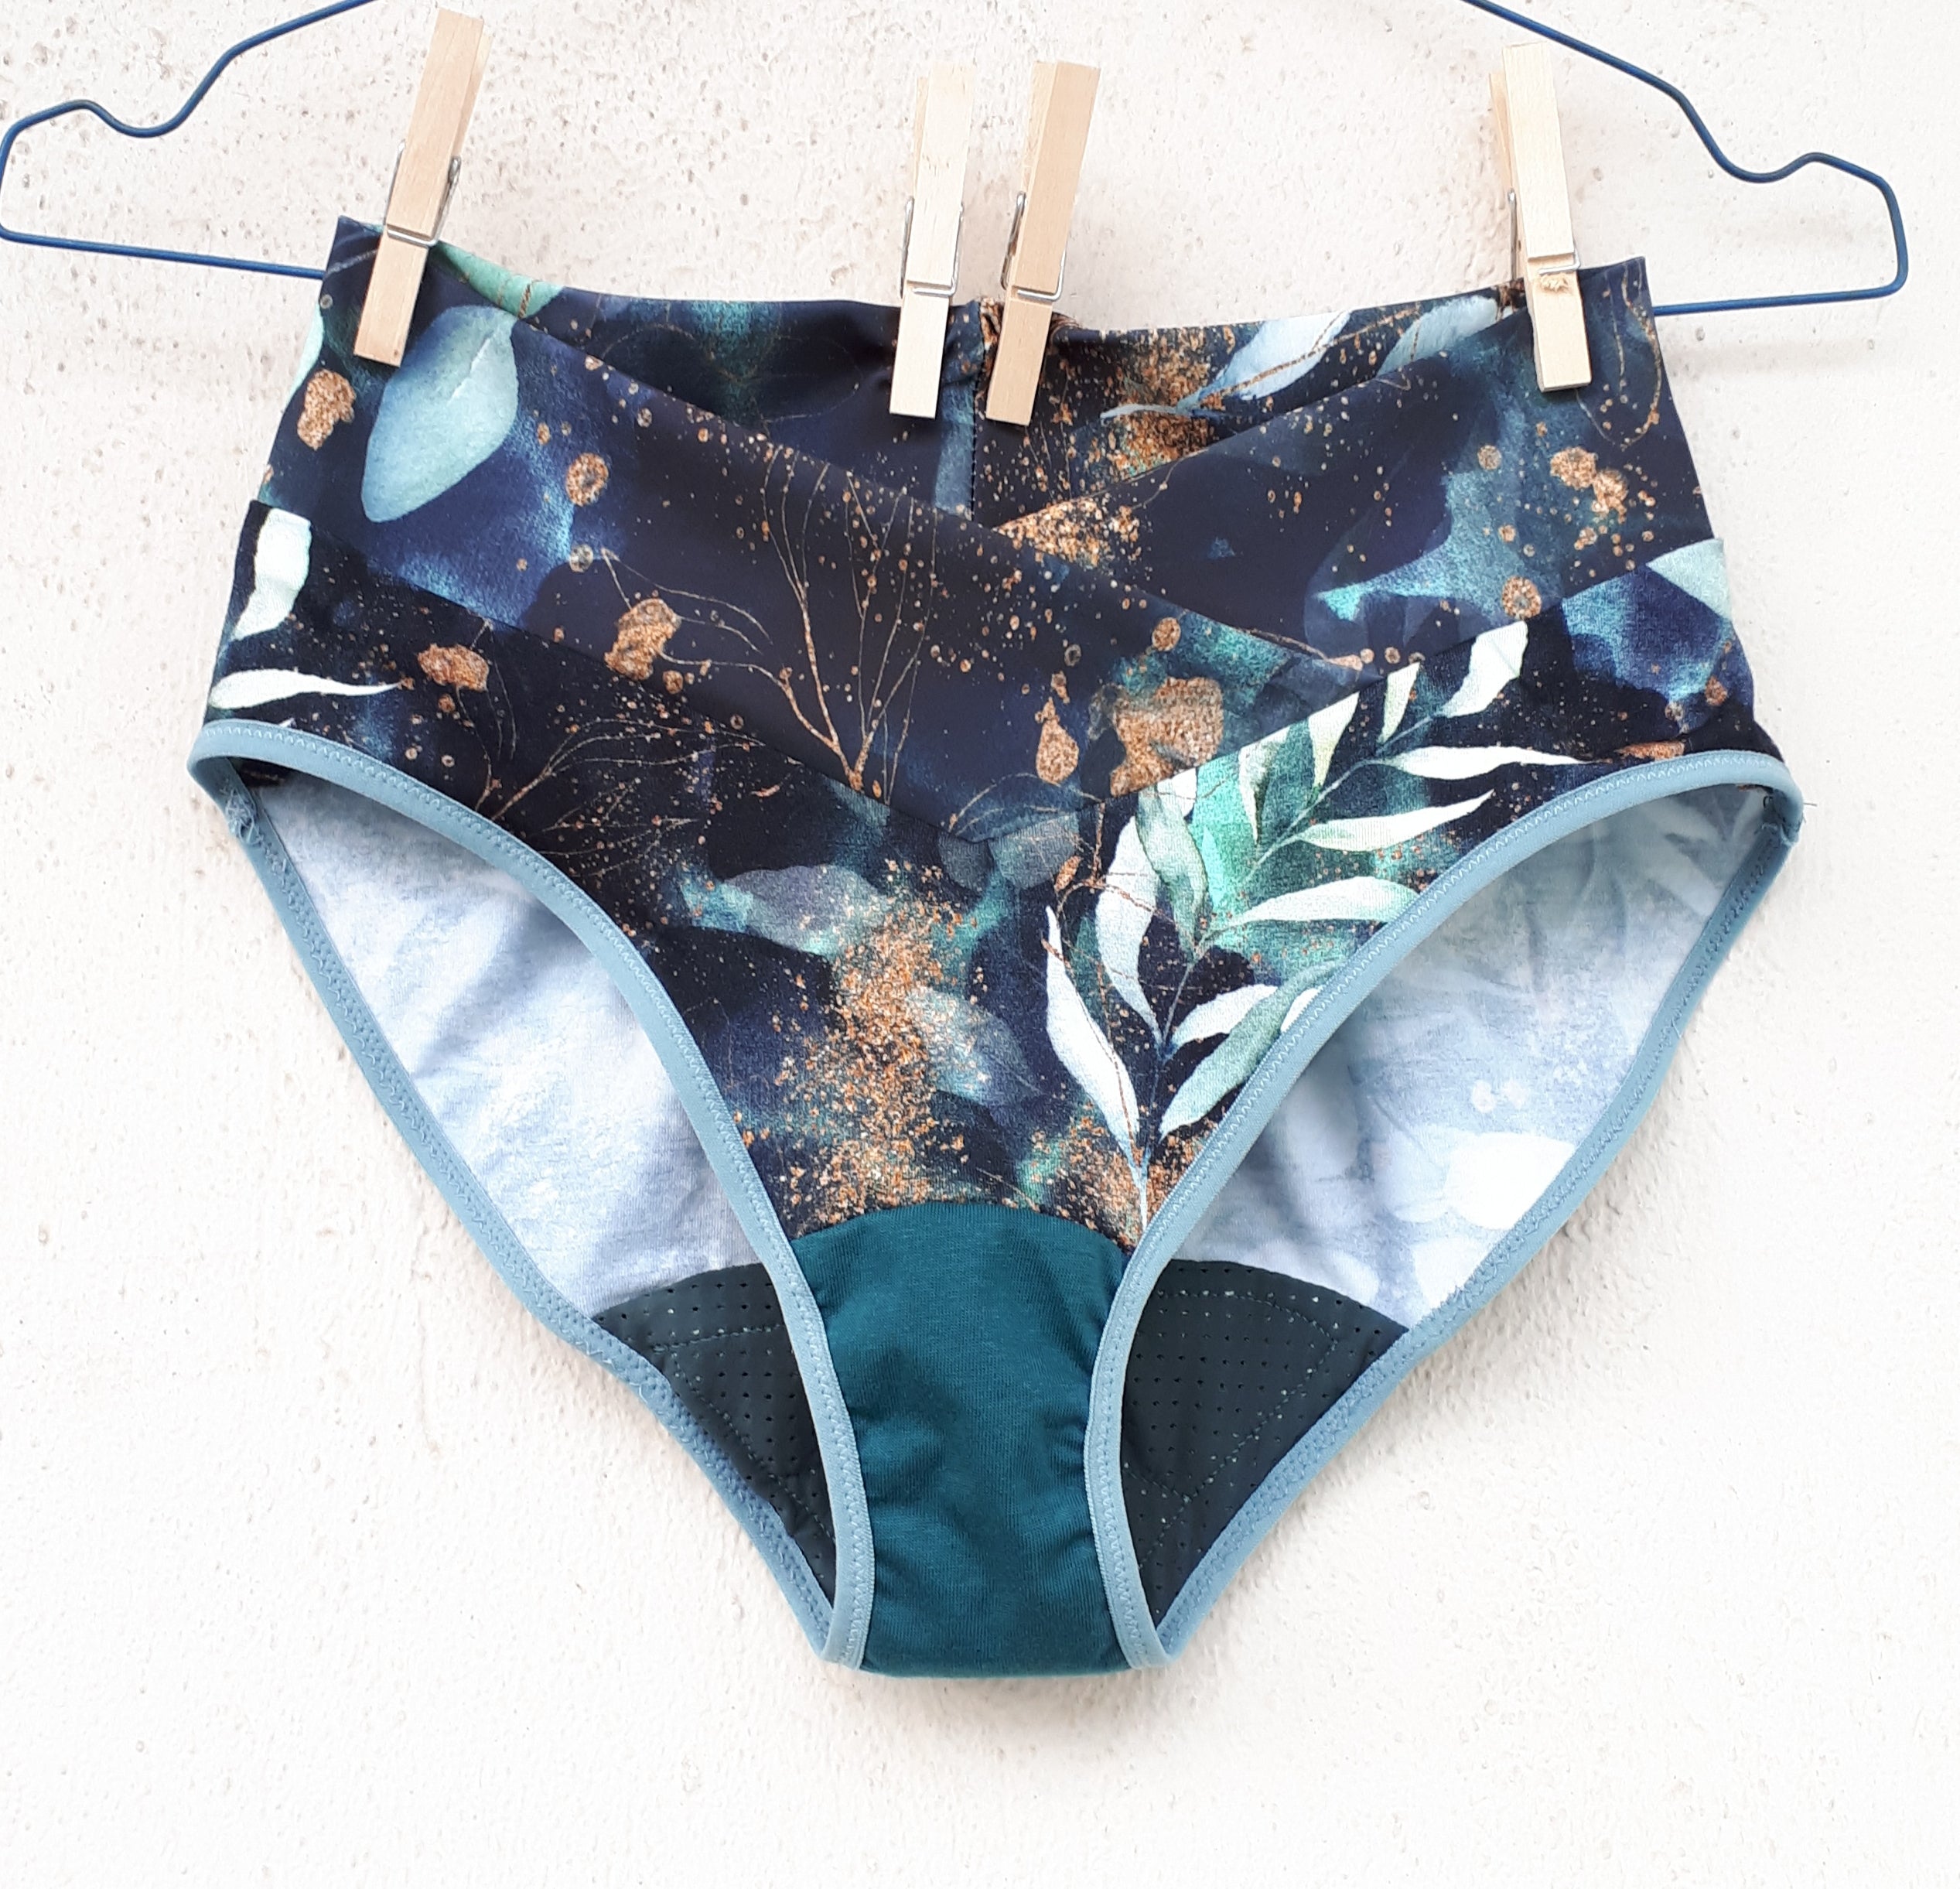 Mid Waist Swim Skirt Period Swimwear Bikini Bottoms – The Eco Women